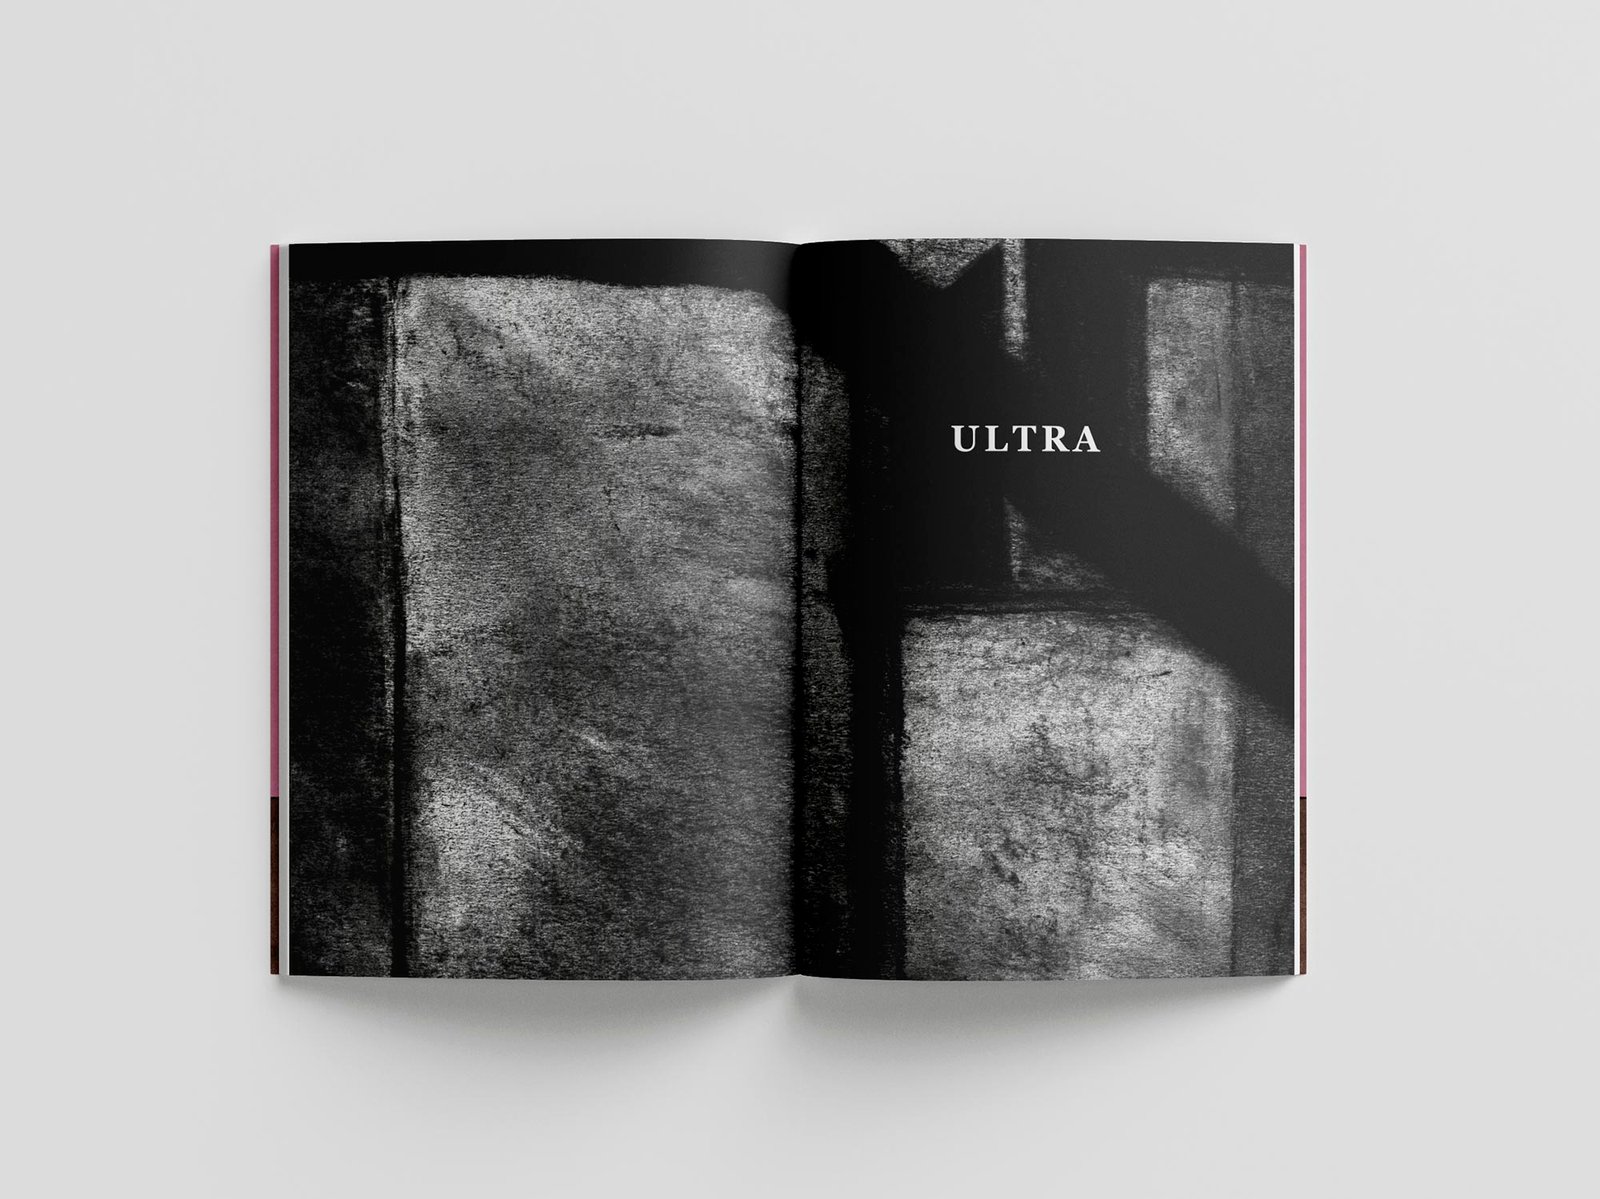 Poetry book: Ultra Diversas Roturas Breves, by Mario Jodra. Interior